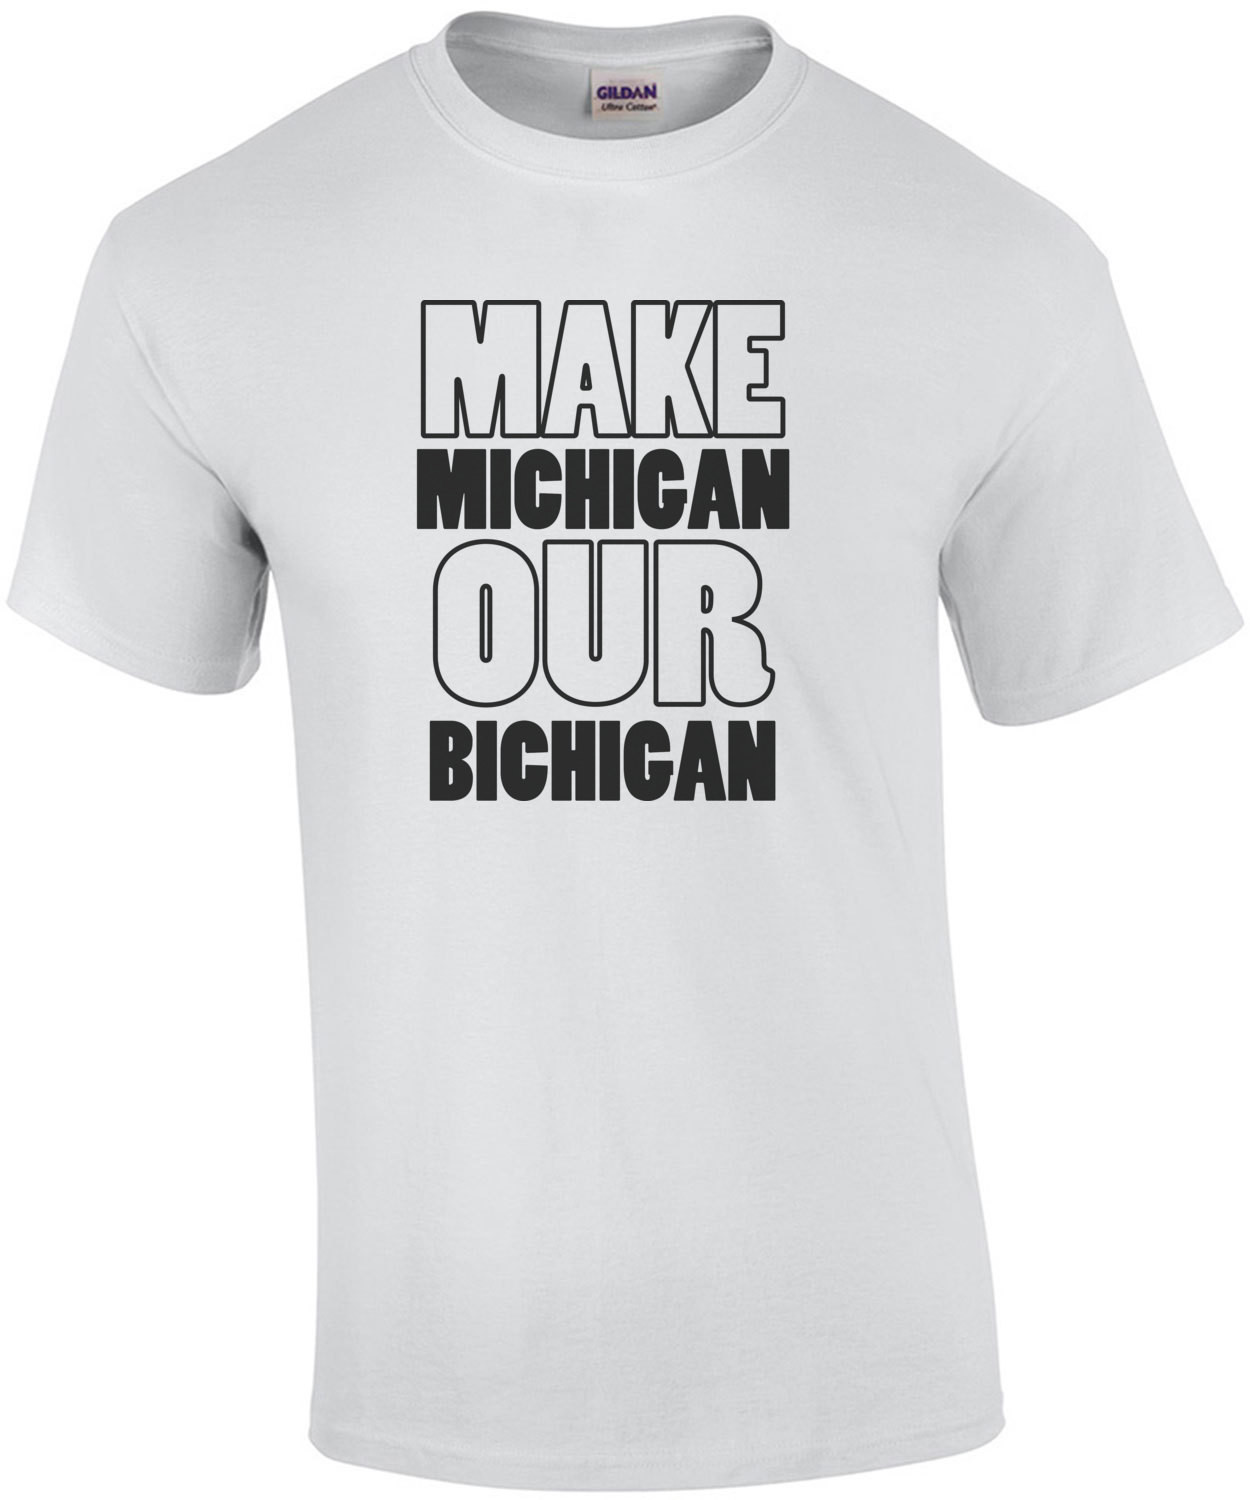 Make Michigan our bichigan - Ohio T-Shirt